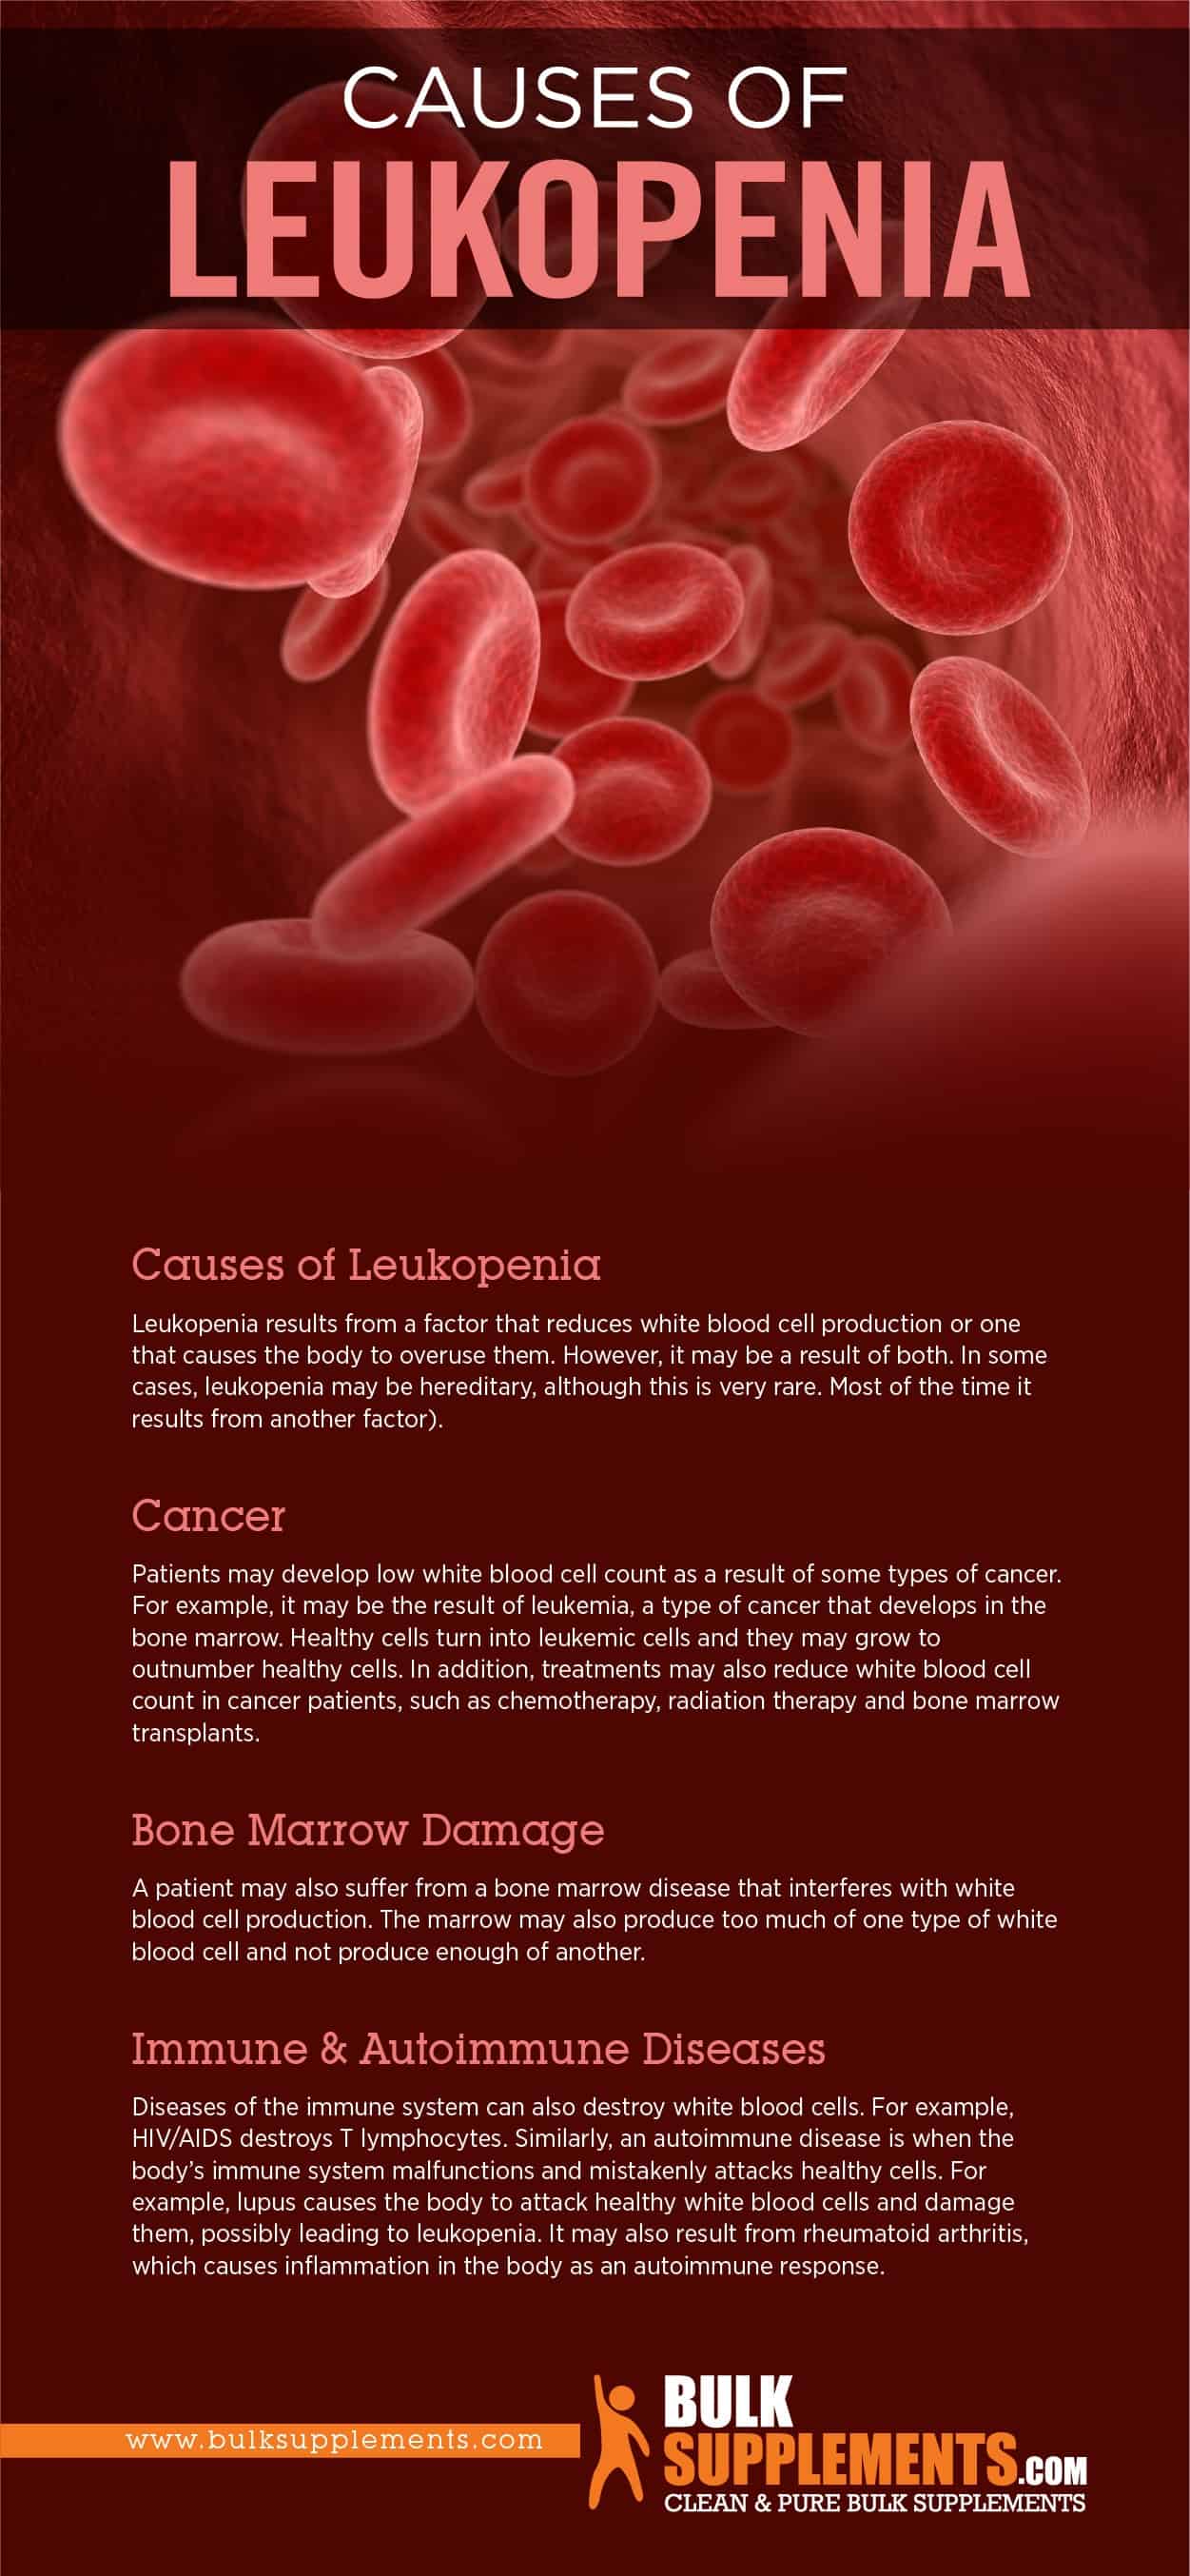 Causes of Leukopenia